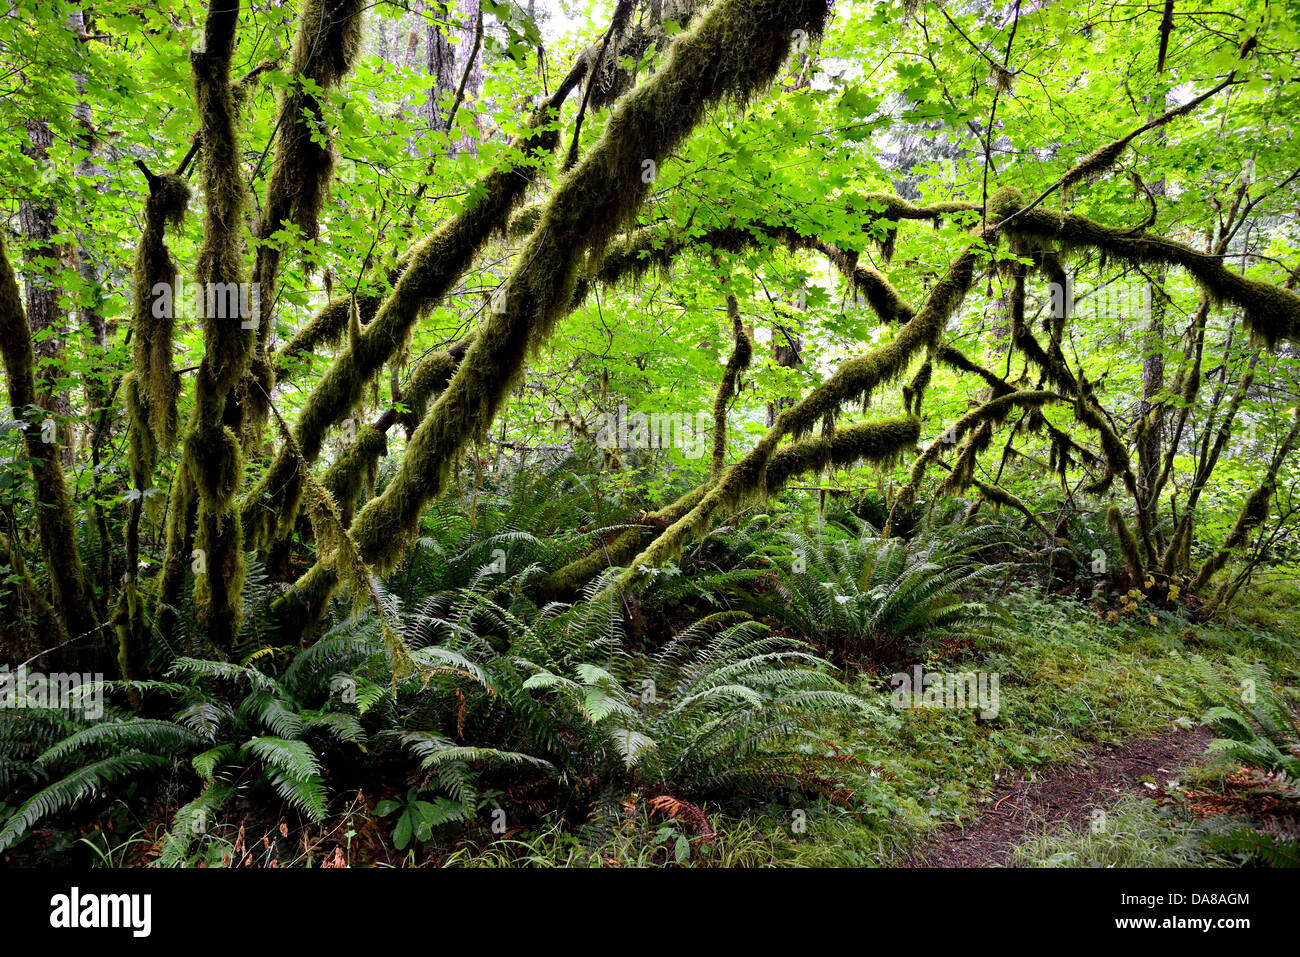 Árboles cubiertos de musgo en el bosque tropical del Pacífico Noroeste. El Parque Nacional Olympic, Washington, Estados Unidos. Foto de stock